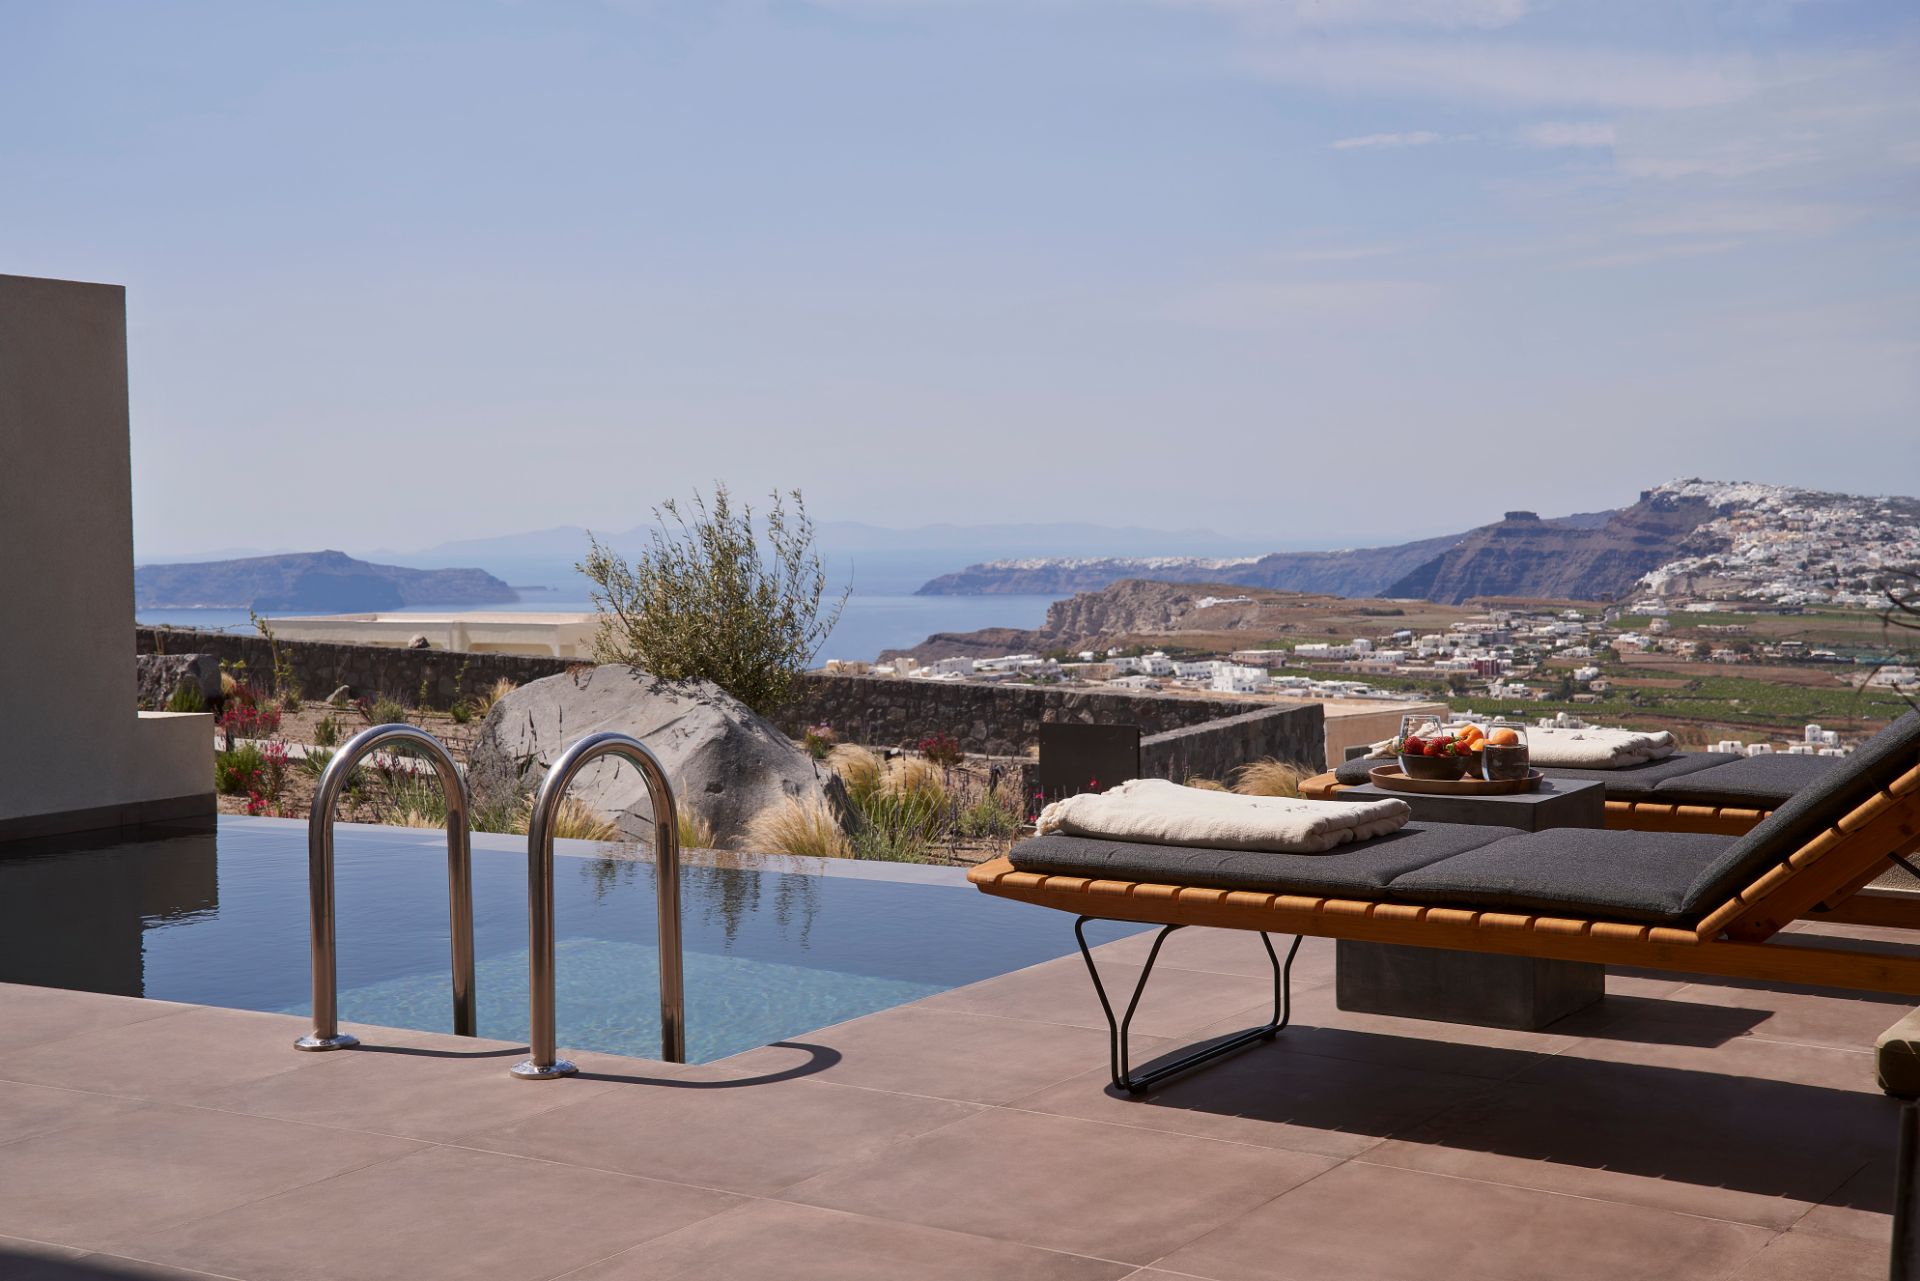 Apikia-Santorini-Supreme-Pool-Suite-Panoramic-View-2